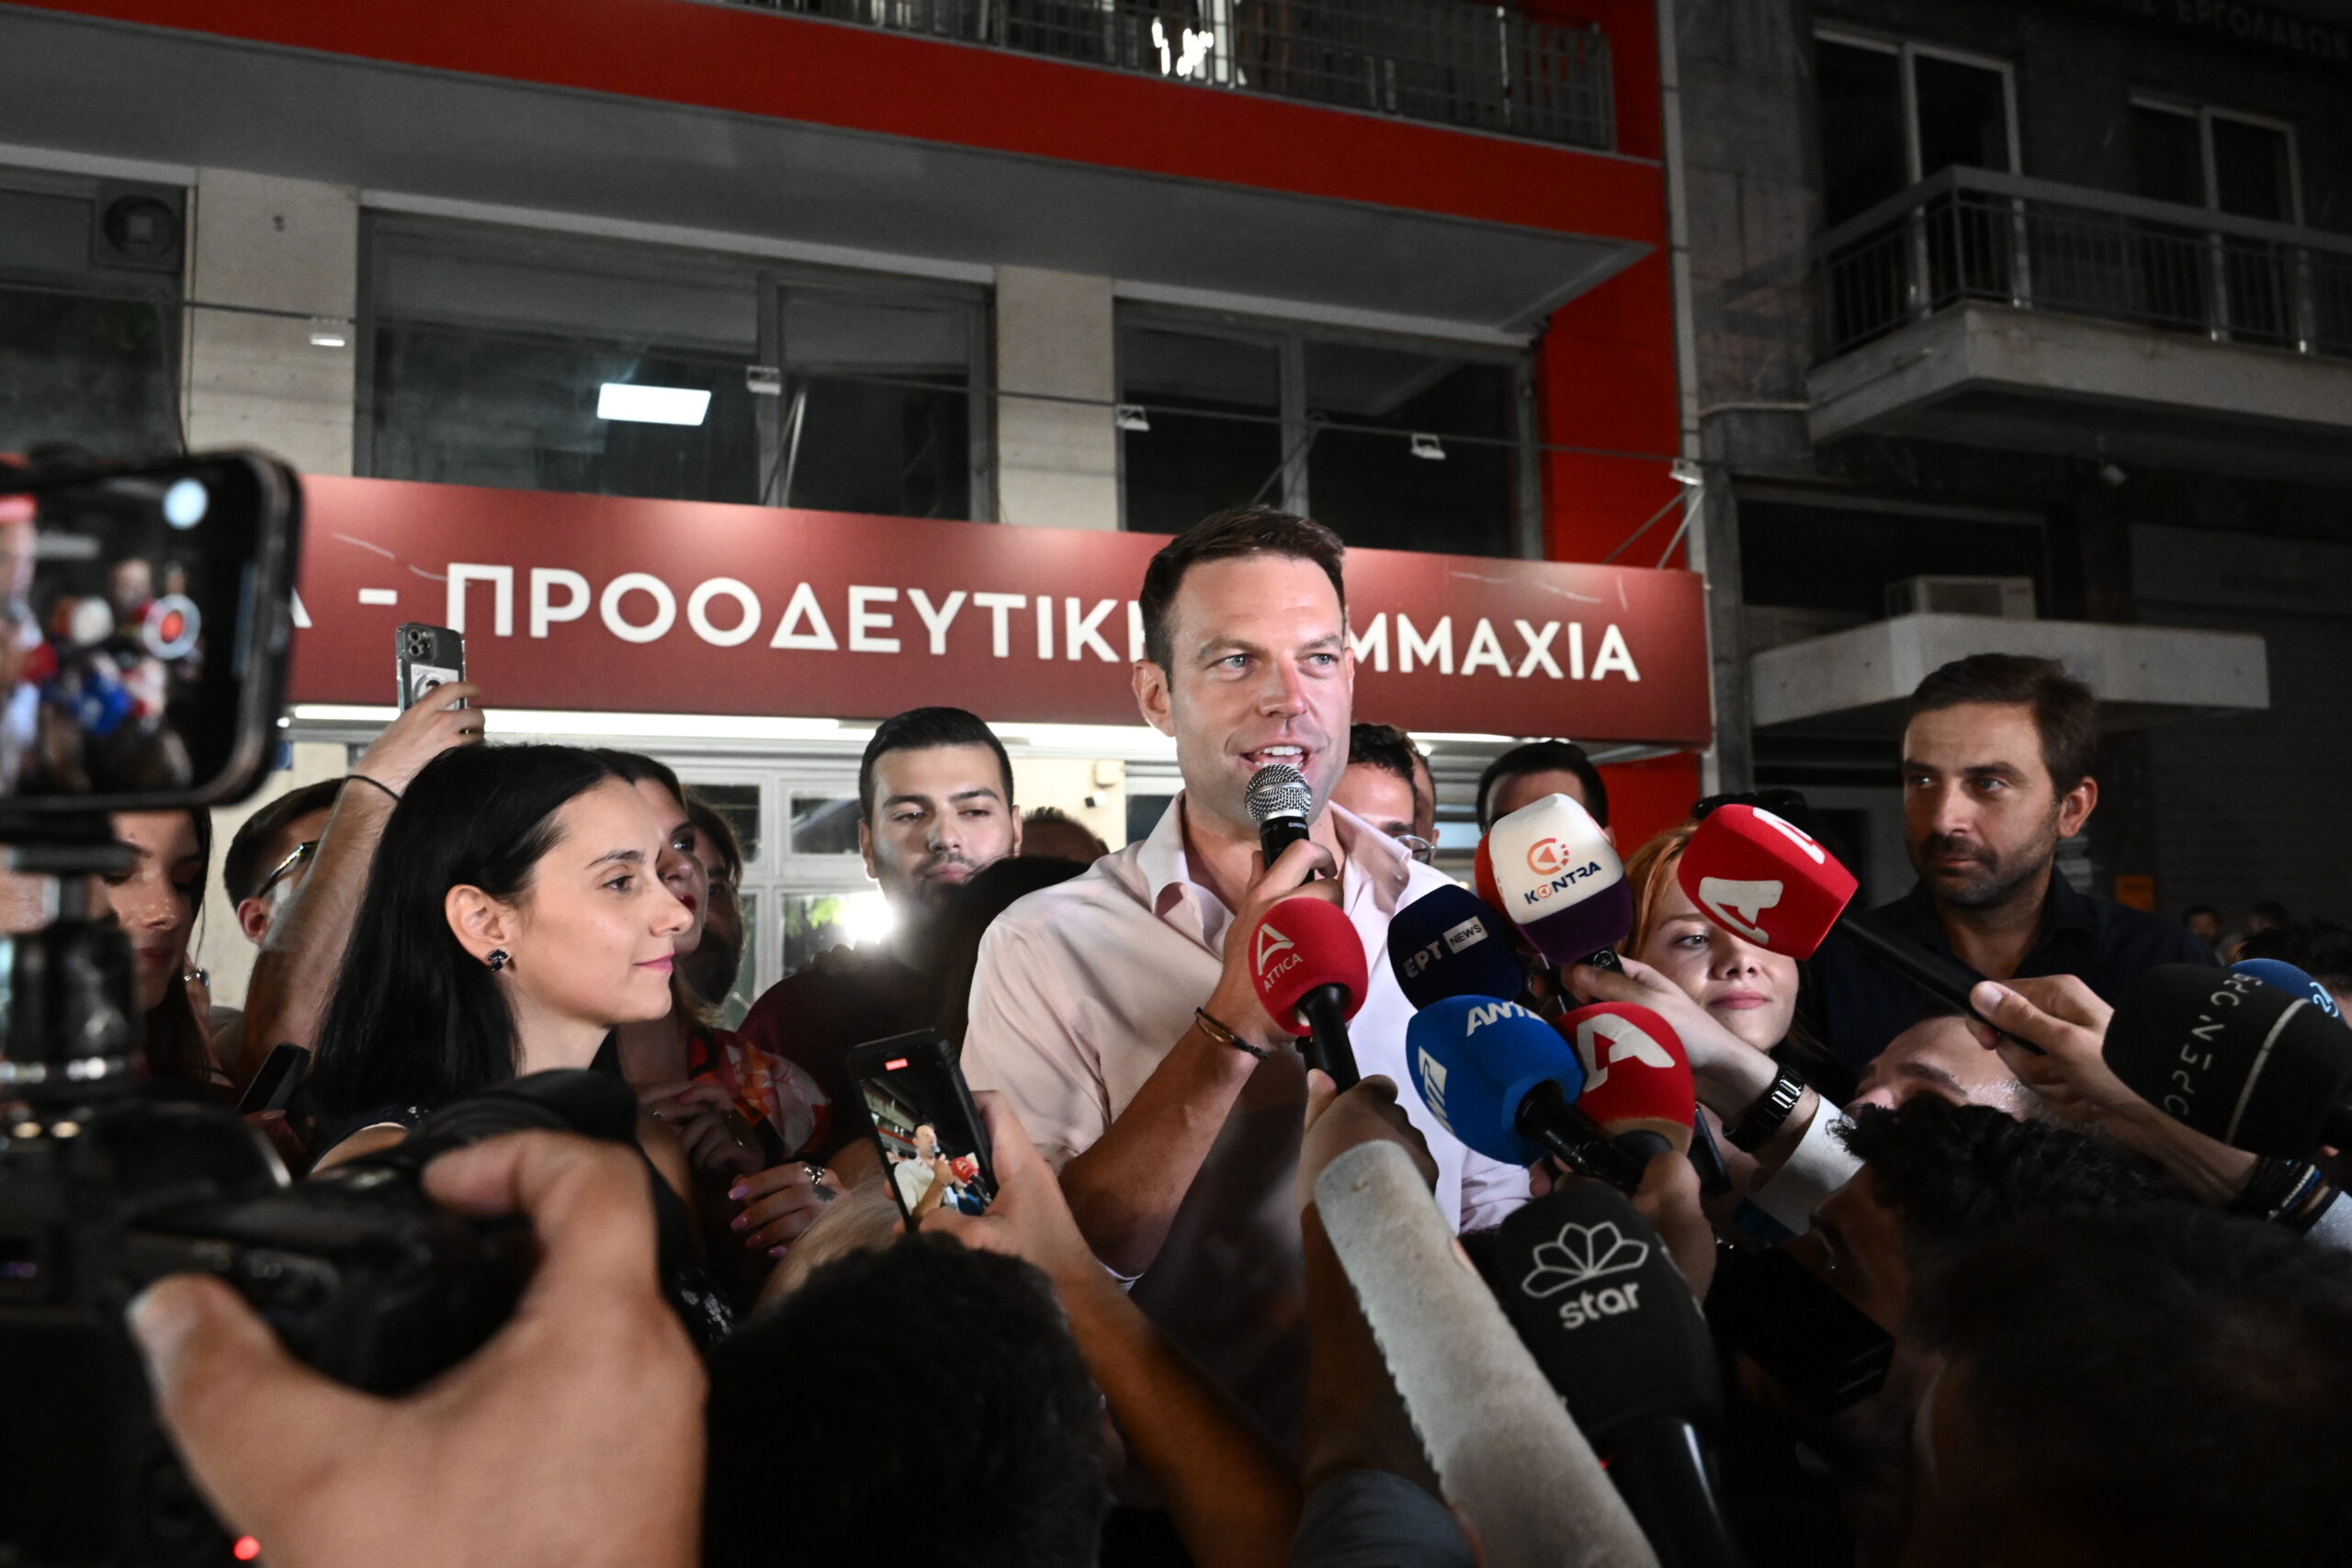 Τα διεθνή ΜΜΕ για τη νίκη Κασσελάκη: «Άουτσάιντερ σε πρωτοφανή νίκη»